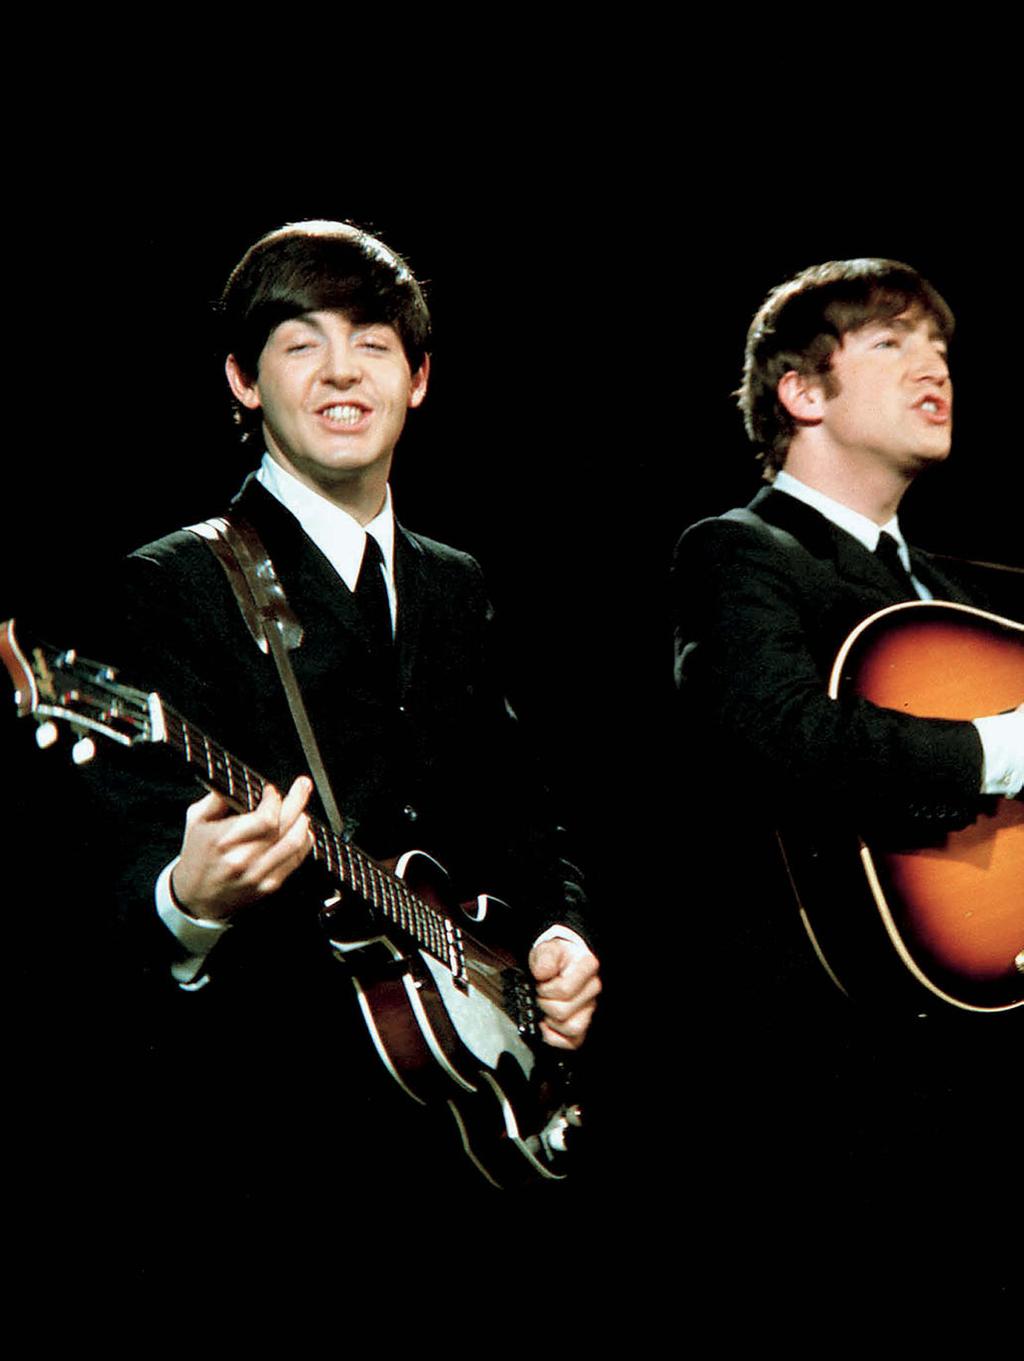 αφιερωμα Come together Ο Πολ Μακ Κάρτνεϊ και ο Τζον Λένον των Beatles μέσα από την ιδιοσυγκρασιακή συνεργασία τους